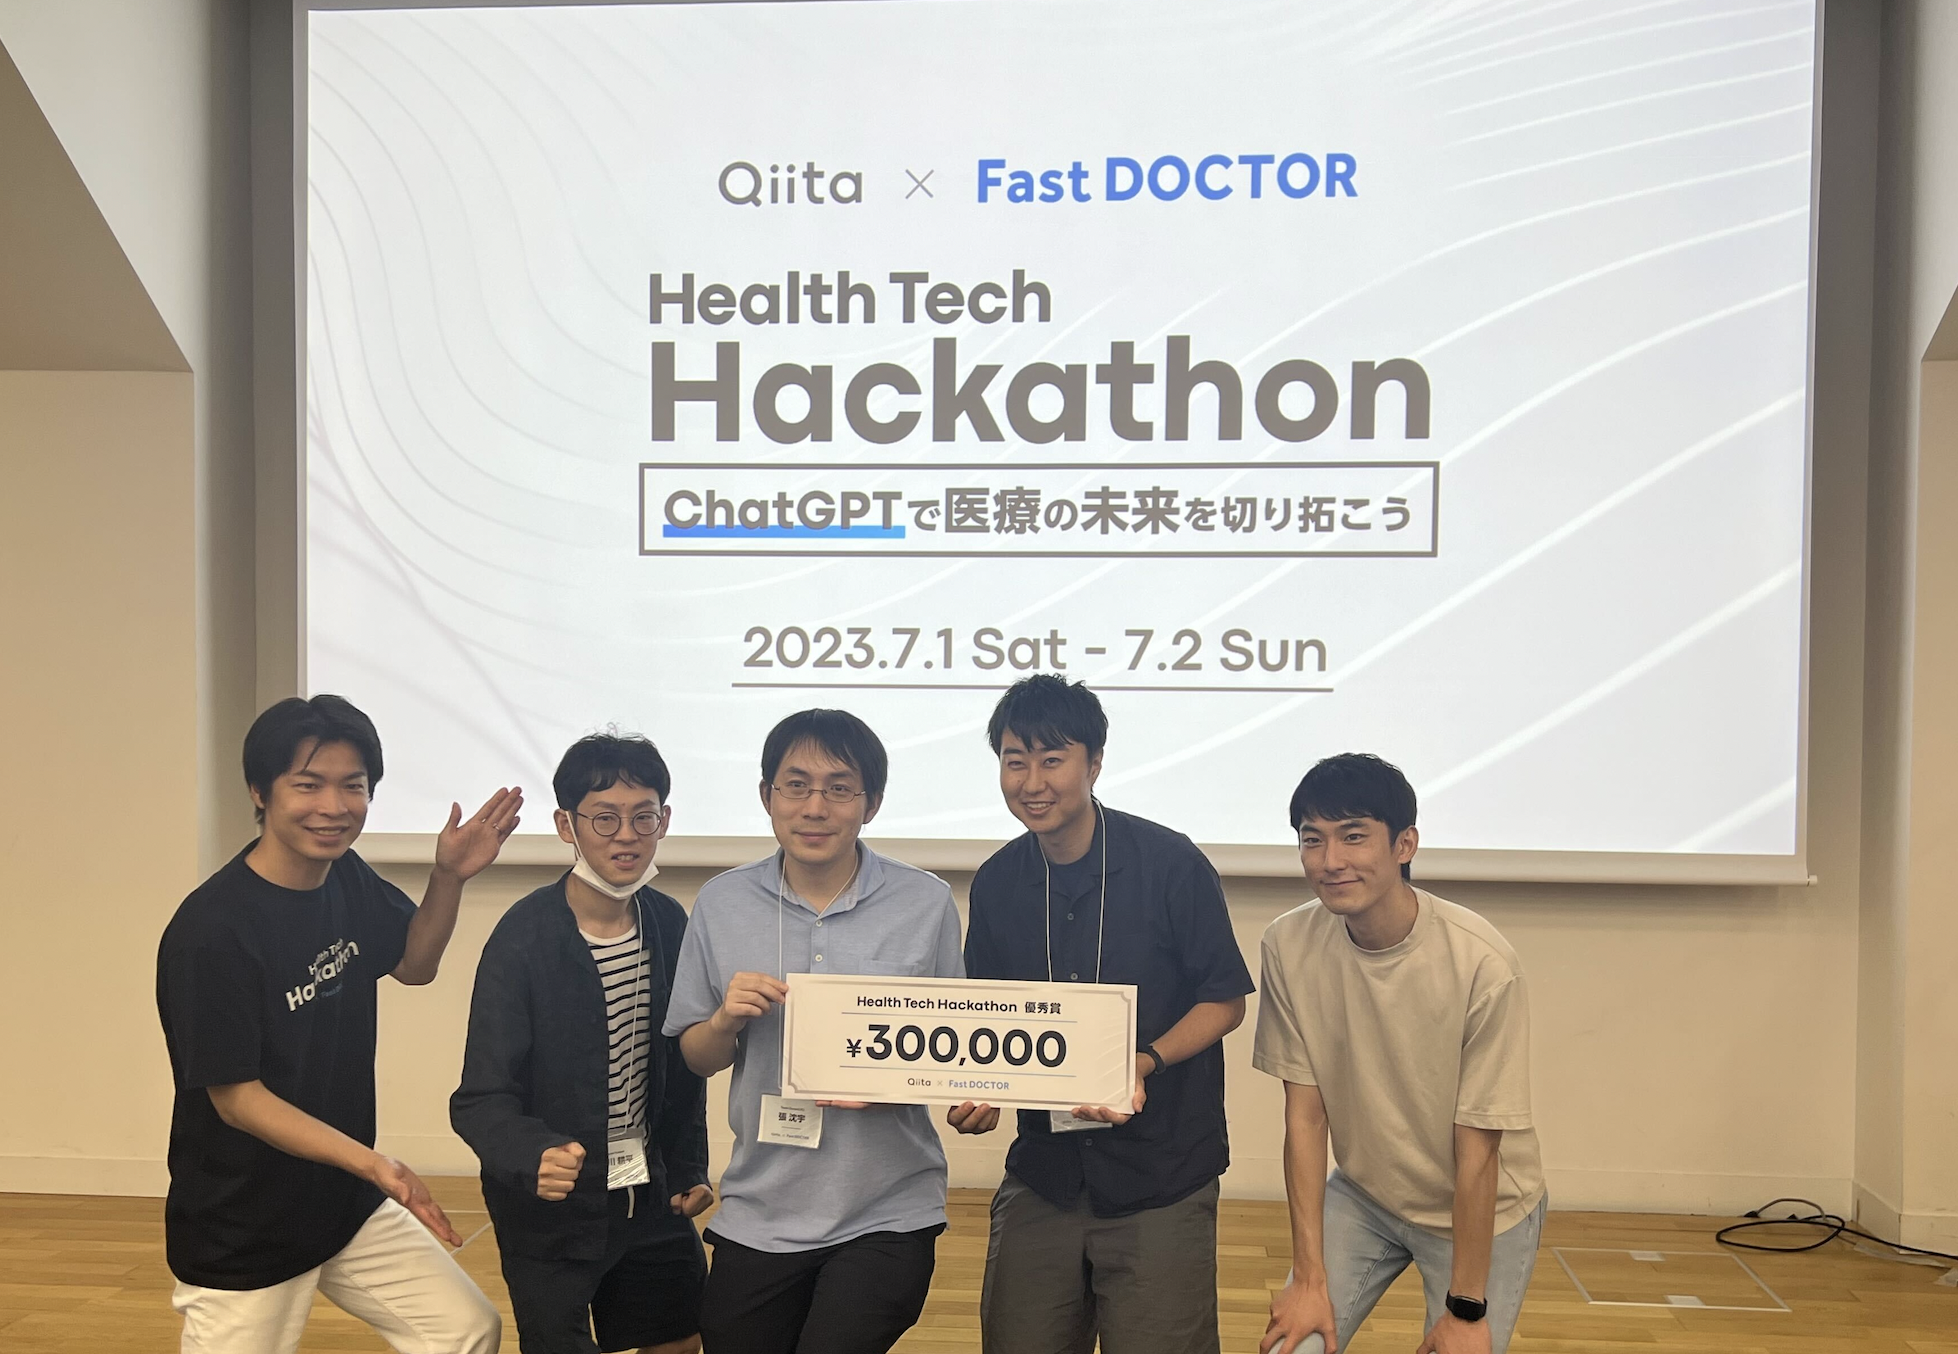 HealthTech Hackathon